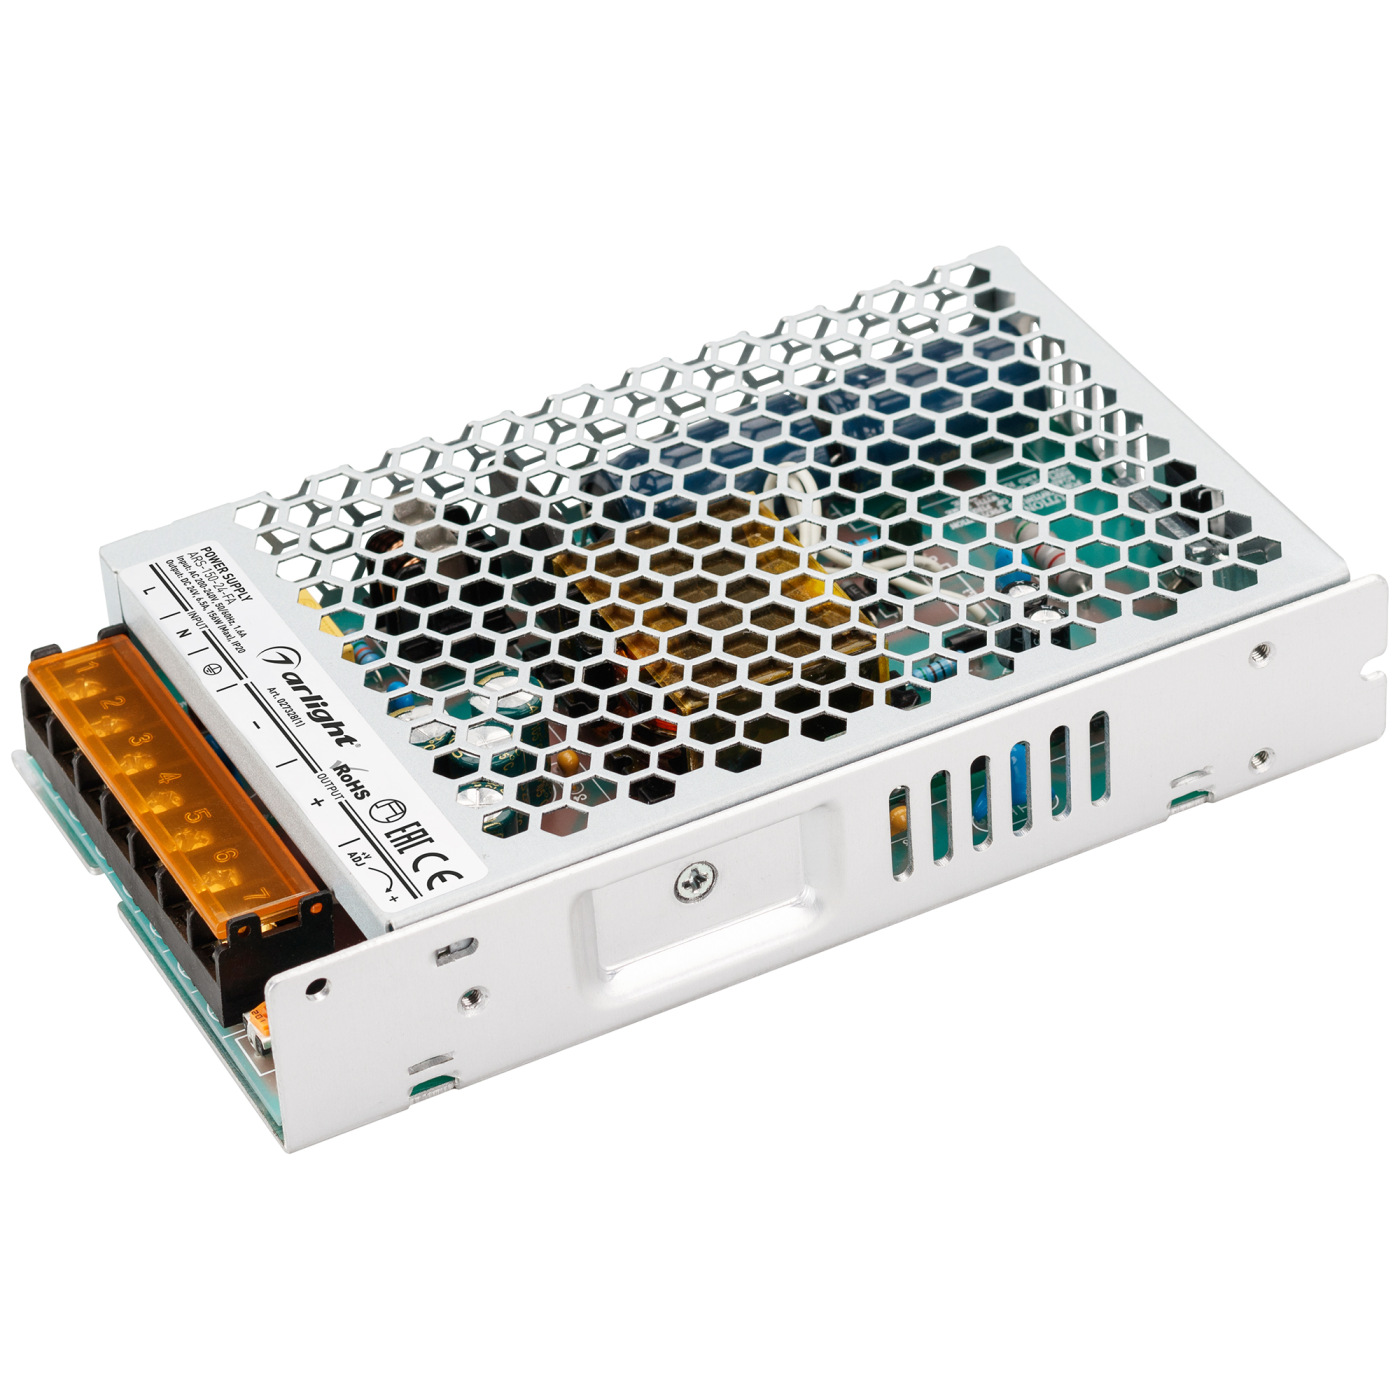 Блок питания ARS-150-24-FA (24V, 6.5A, 156W) (Arlight, IP20 Сетка, 3 года), 027328(1) сетка и режущий блок для электробритвы braun cooltec 40b